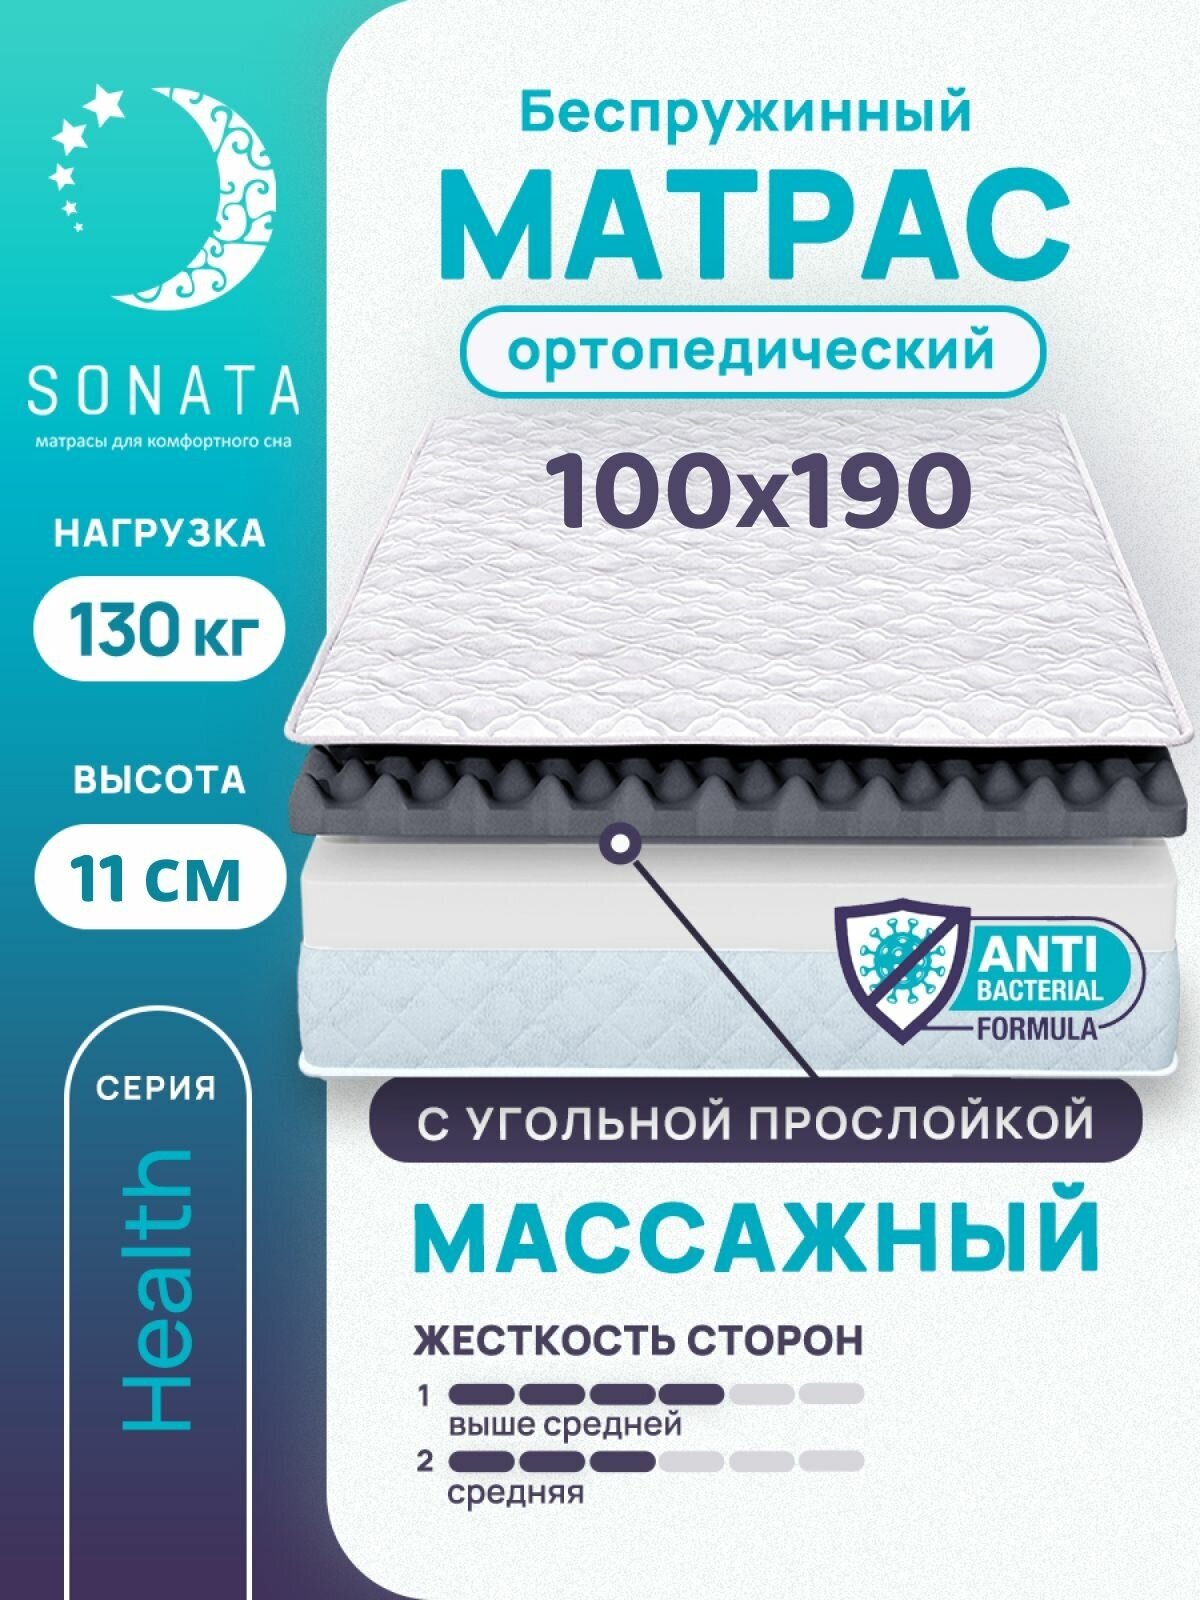 Матрас 100х190 см SONATA, беспружинный, односпальный, матрац для кровати, высота 11 см, с массажным эффектом